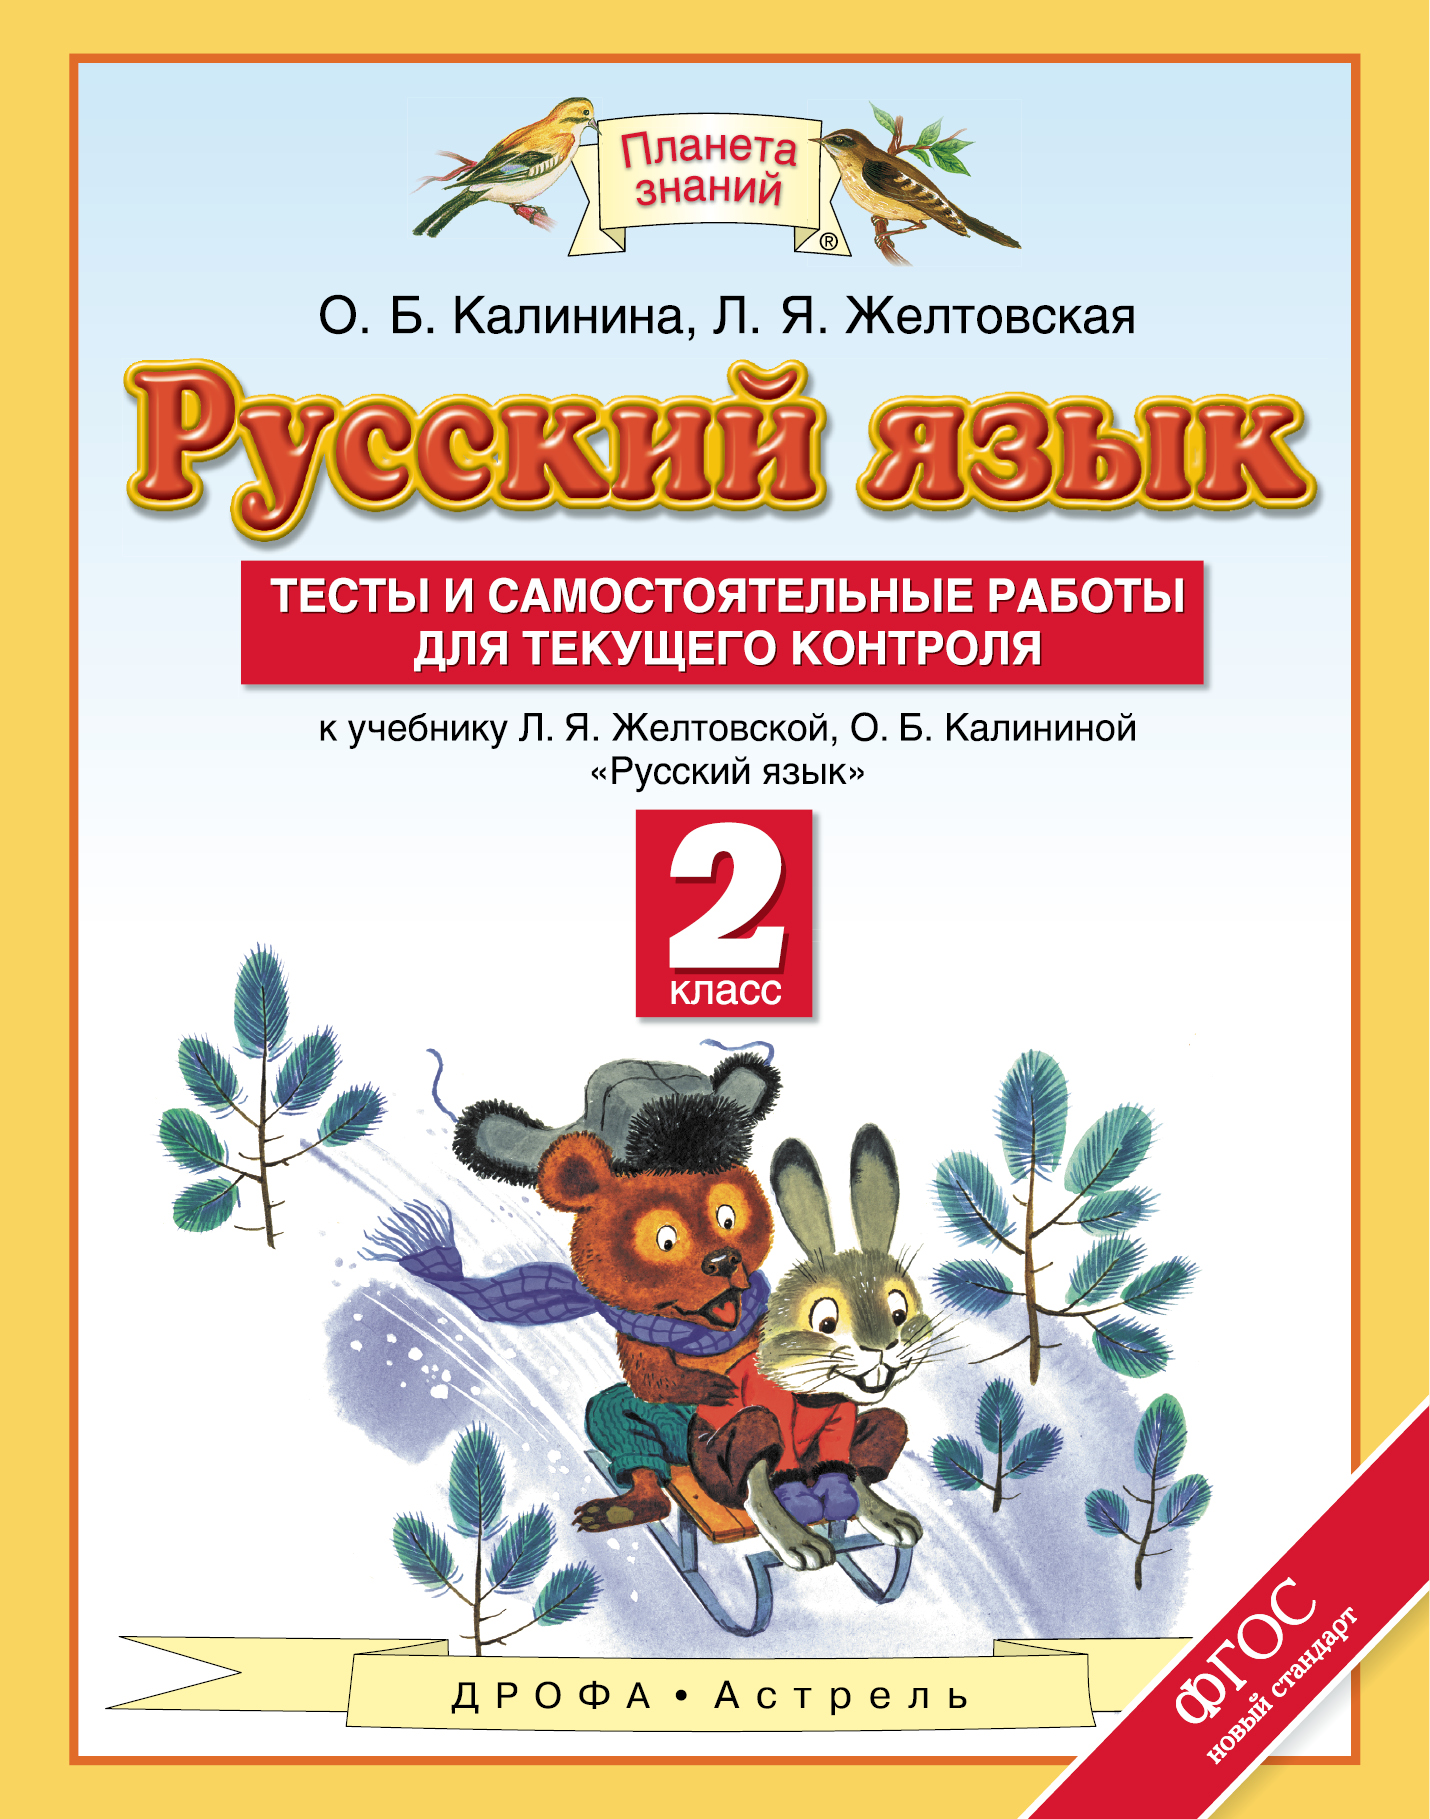 https://cdn.eksmo.ru/v2/DRF000000000722668/COVER/cover3d1.jpg